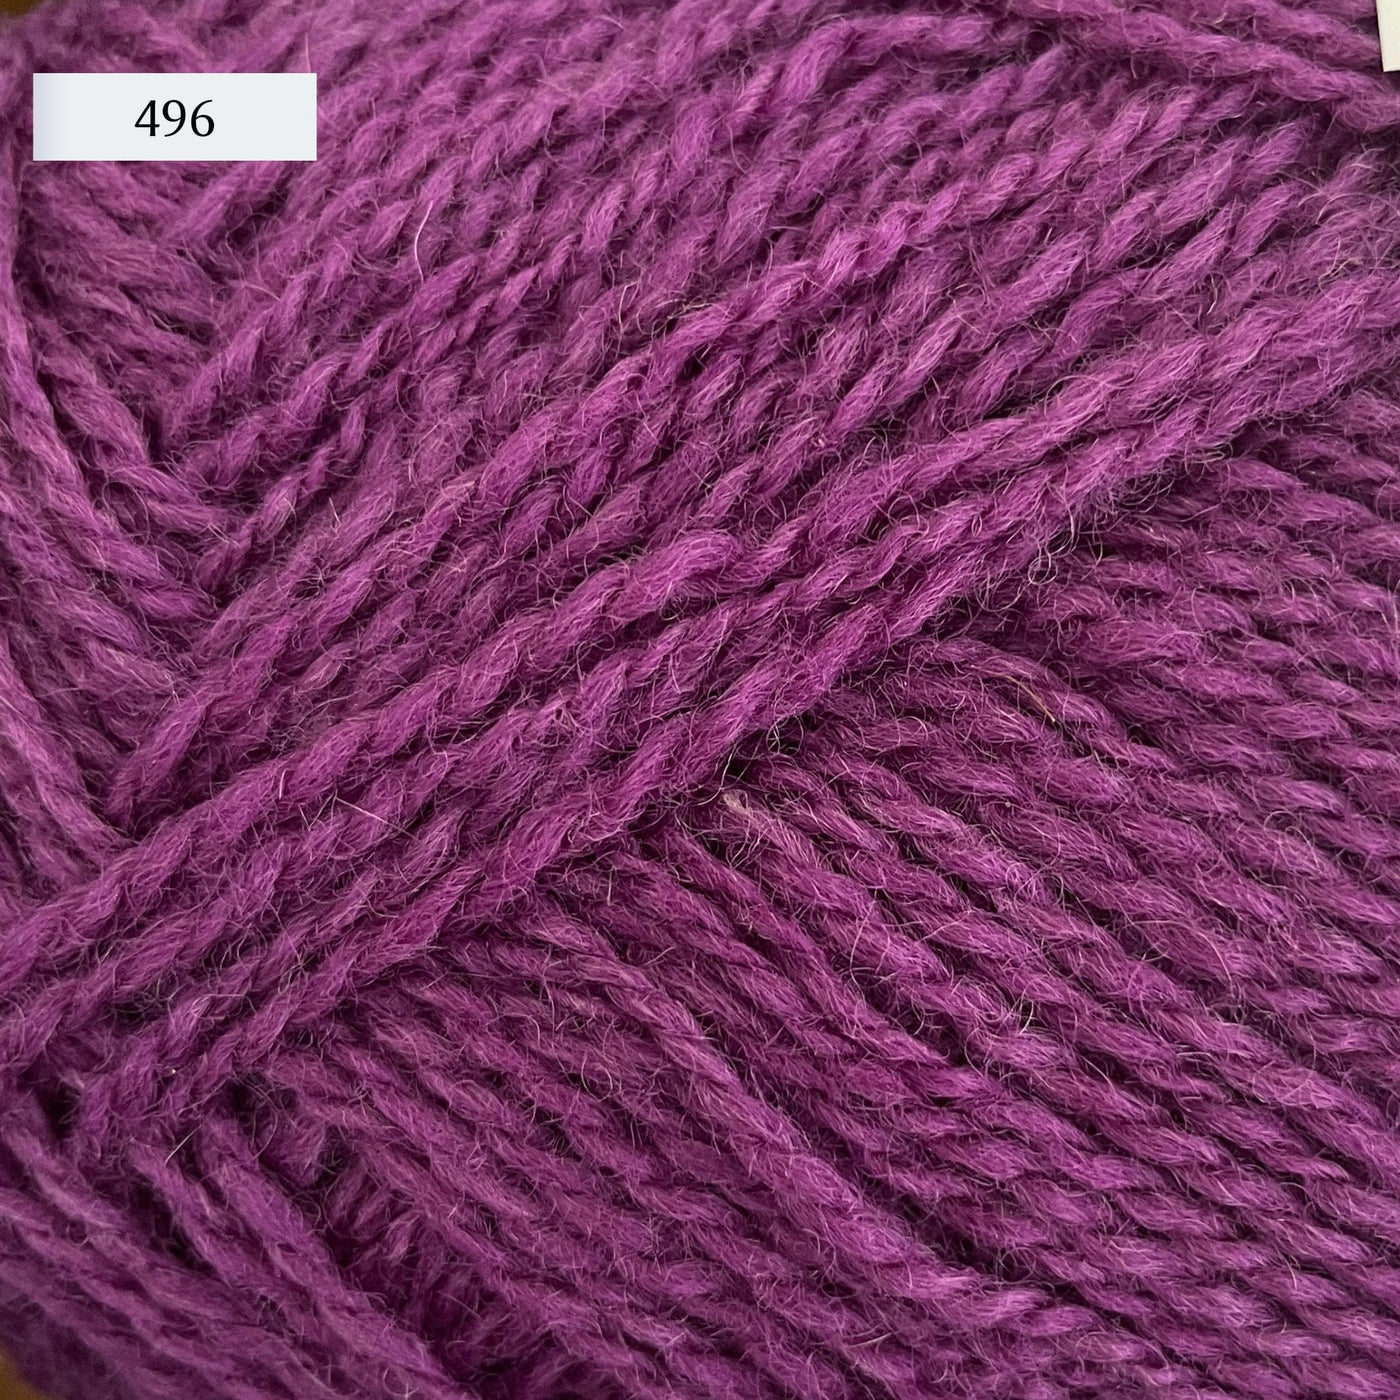 Rauma Finullgarn, a fingering/sport weight yarn, in color 496, a medium raspberry purple